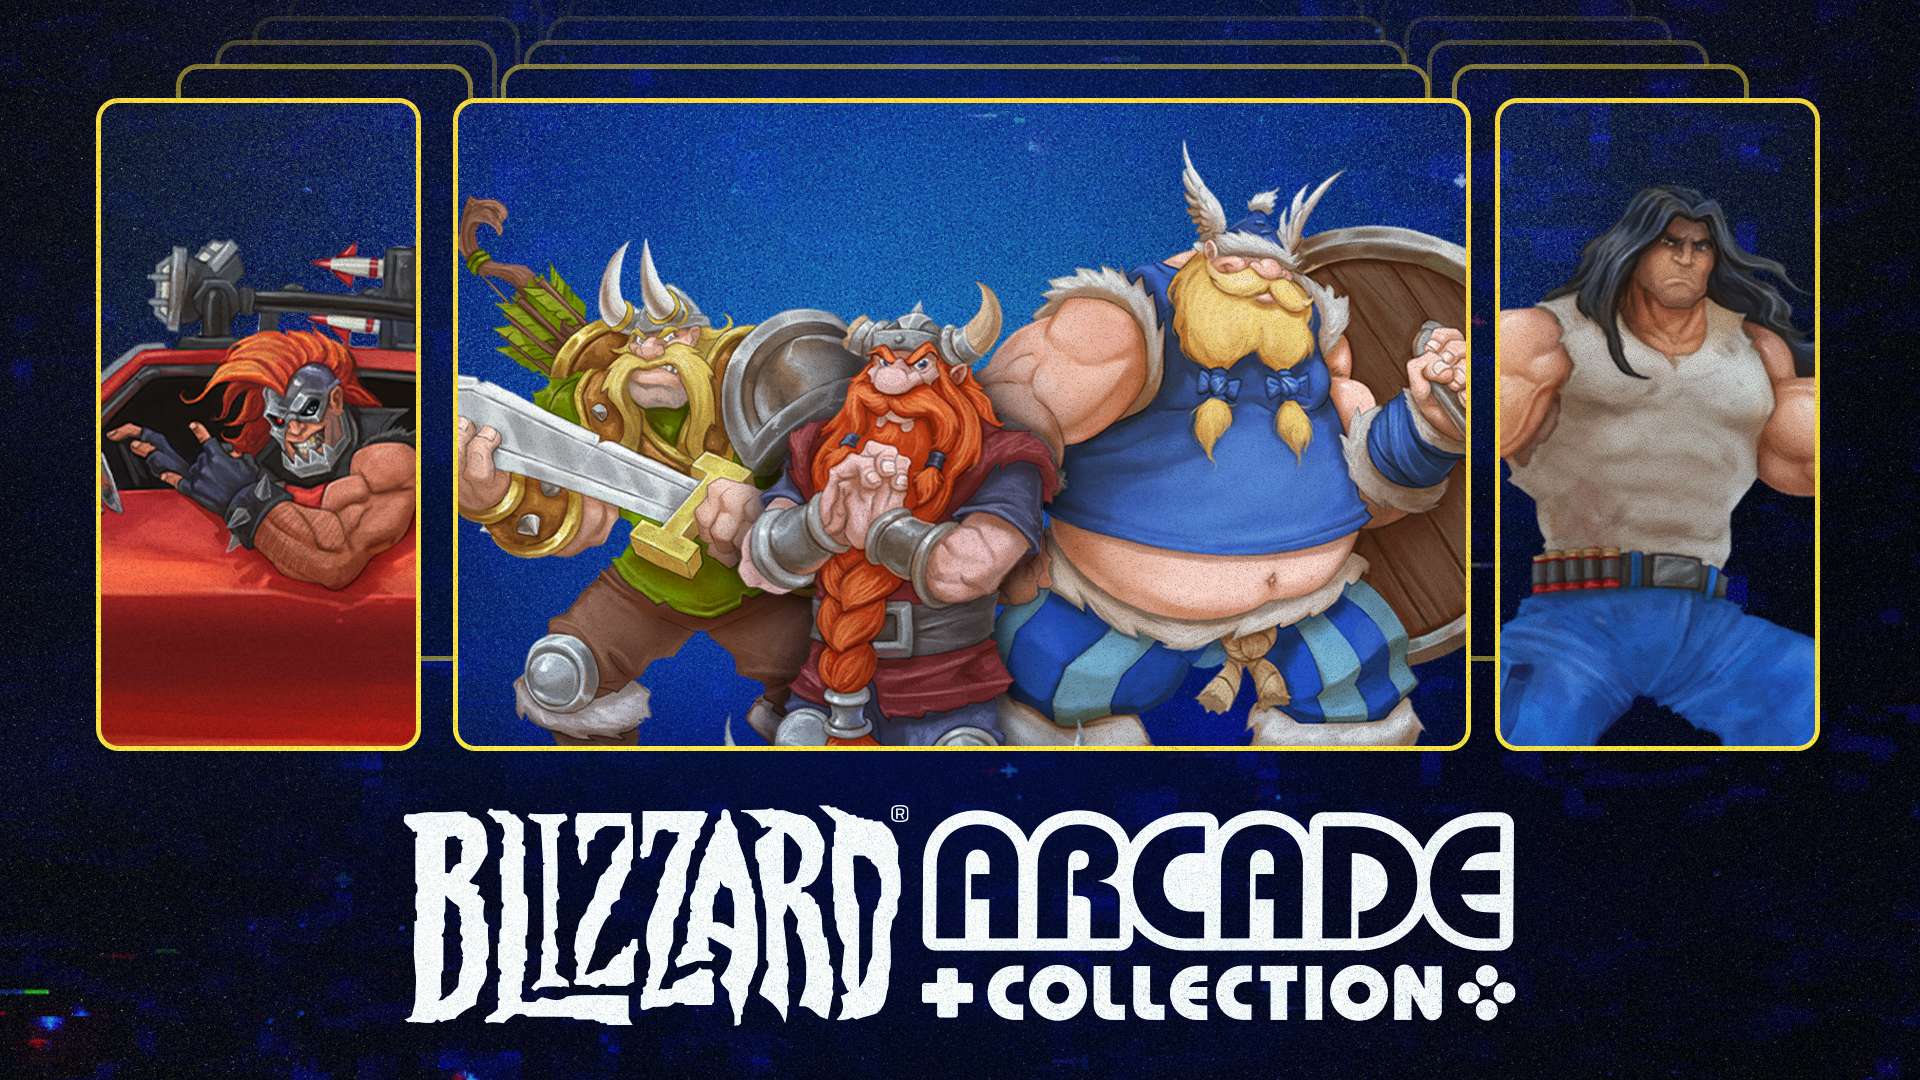 A Blizzard® Arcade Collection está ainda mais completa: agora com dois jogos novos e recursos inéditos